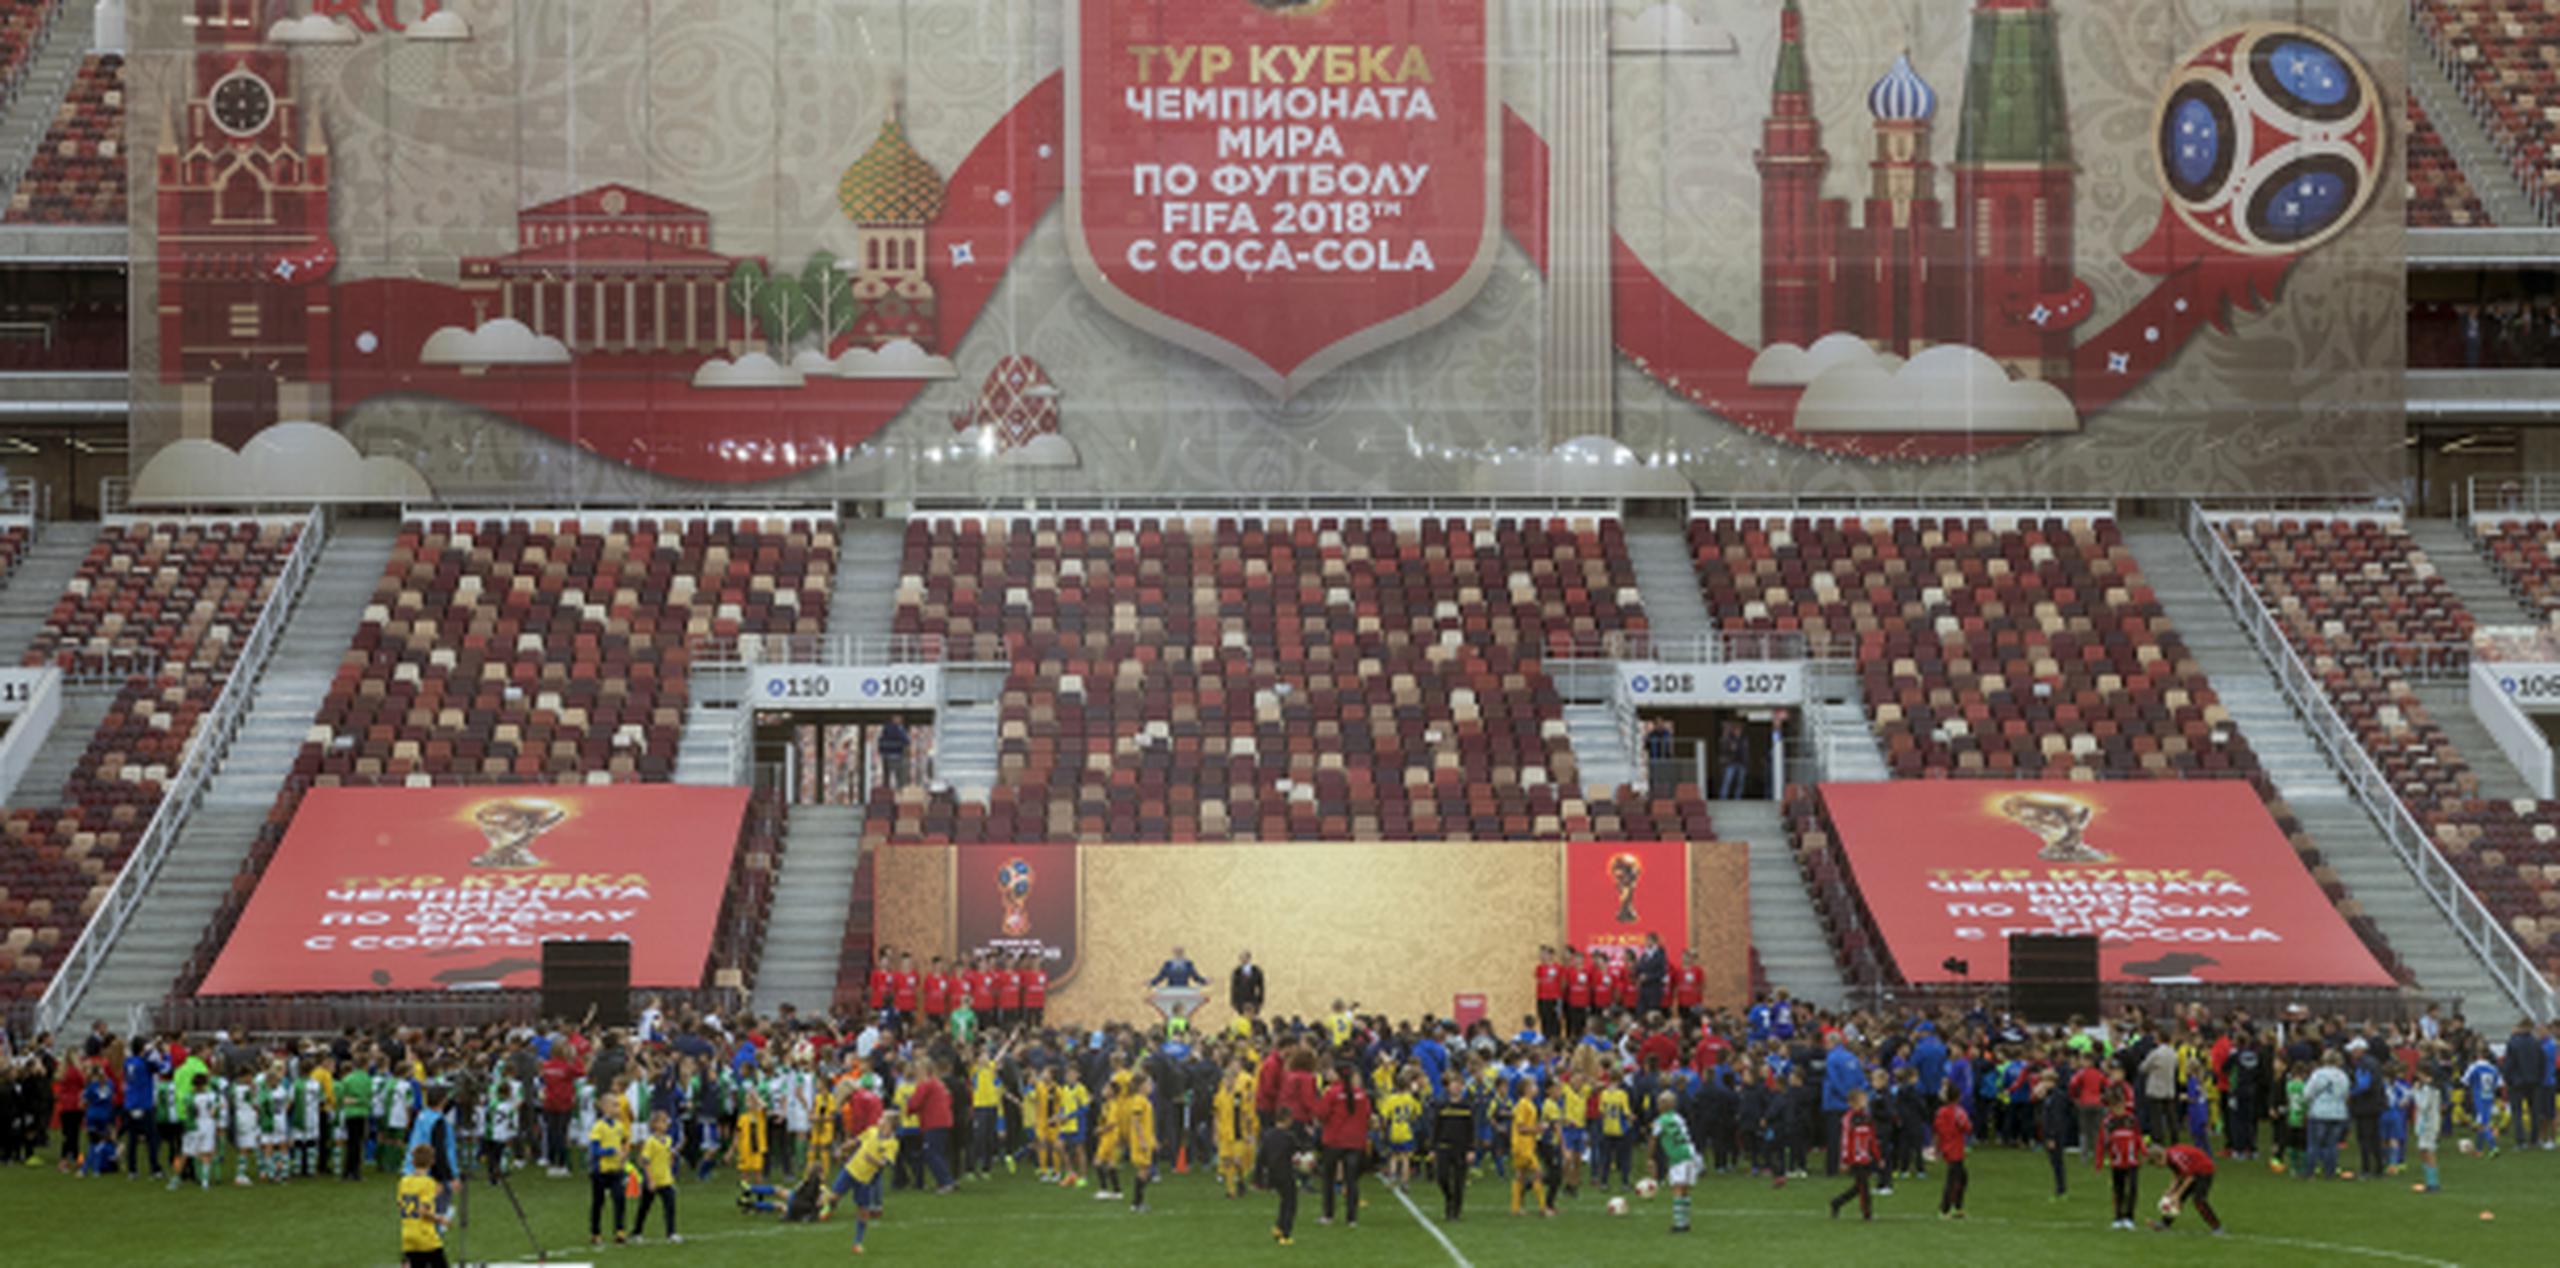 El estadio Luzhniki de Moscú ya comenzó a sentir el ambiente mundialista cuando recibió el trofeo de la Copa Munidial de la FIFA, para su posterior recorrido a través de Rusia. (AP/Ivan Sekretarev)